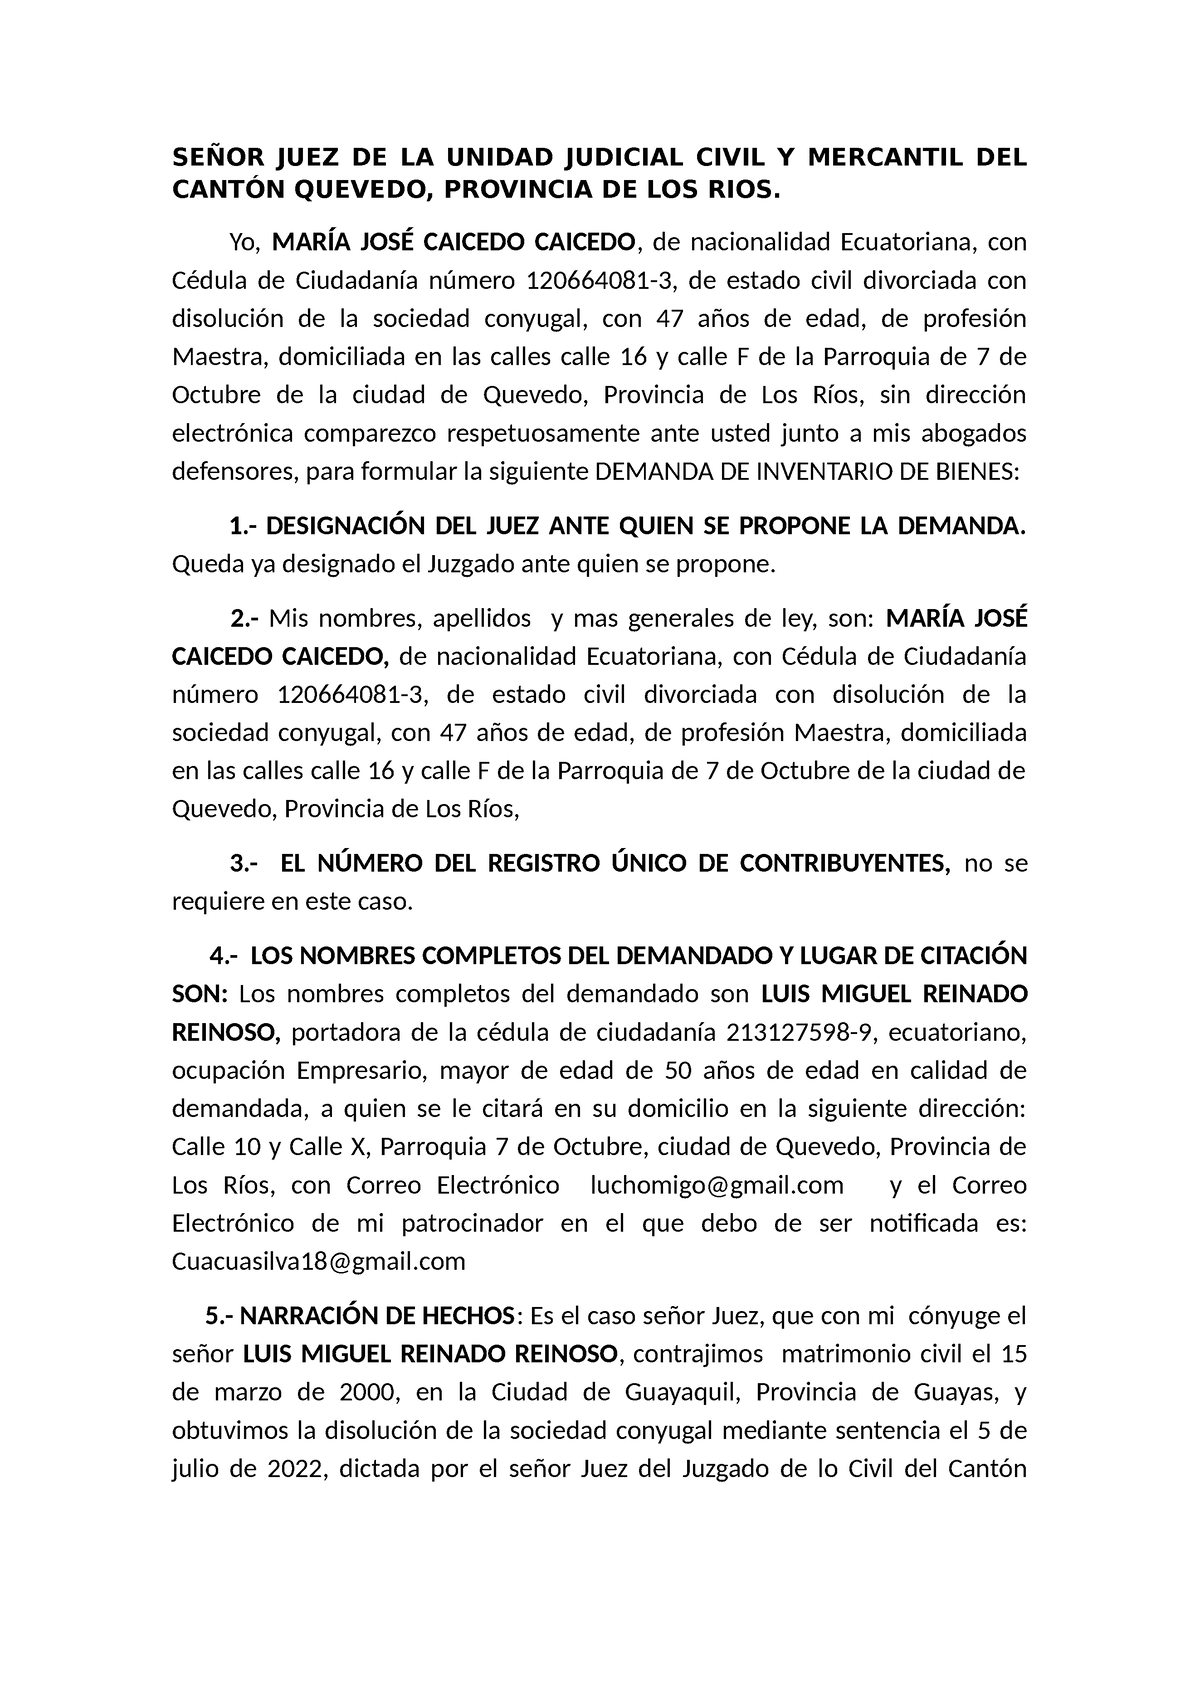 Solicitud Demanda De Inventario Por Josue Silva Mora SeÑor Juez De La Unidad Judicial Civil 4588